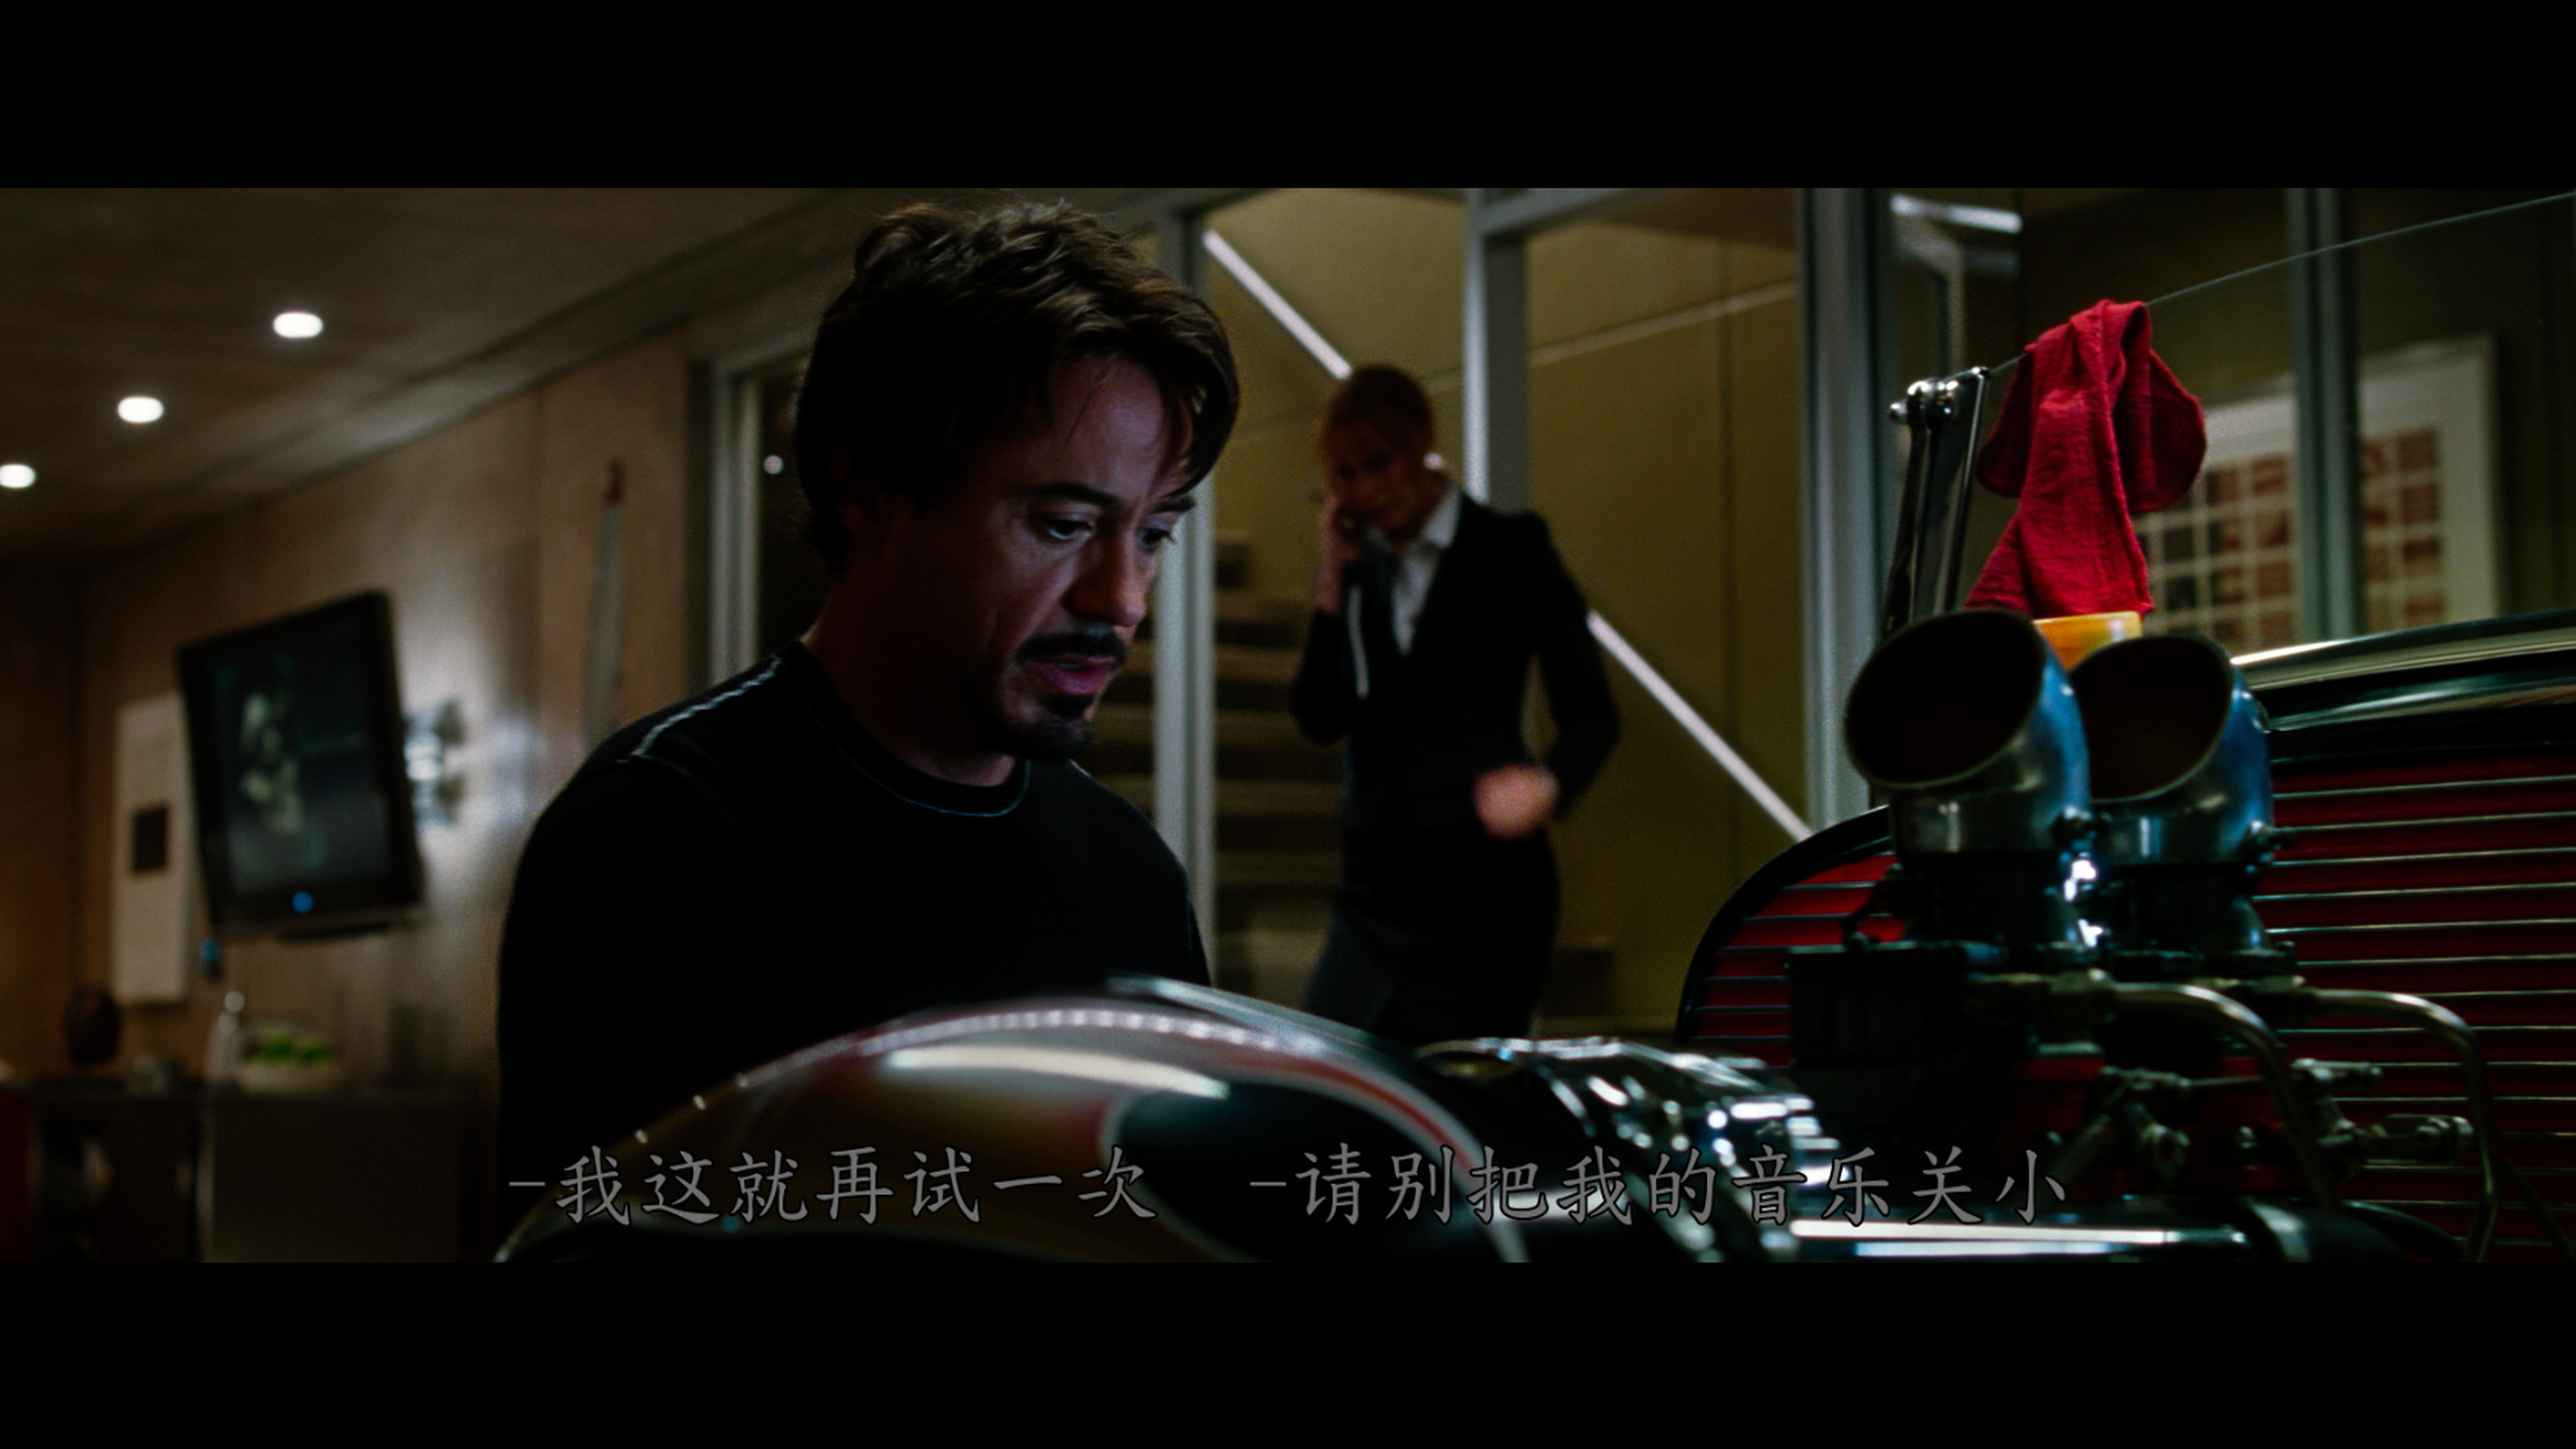 钢铁侠 / 钢铁人(台) / 铁人 / 铁甲奇侠(港) 【DIY次世代国配+简繁+简繁英双语字幕】 Iron Man 2008 UHD Blu-ray 2160p HEVC TrueHD Atmos 7 1-lingfriendly@OurBits    [62.71 GB]-2.jpg